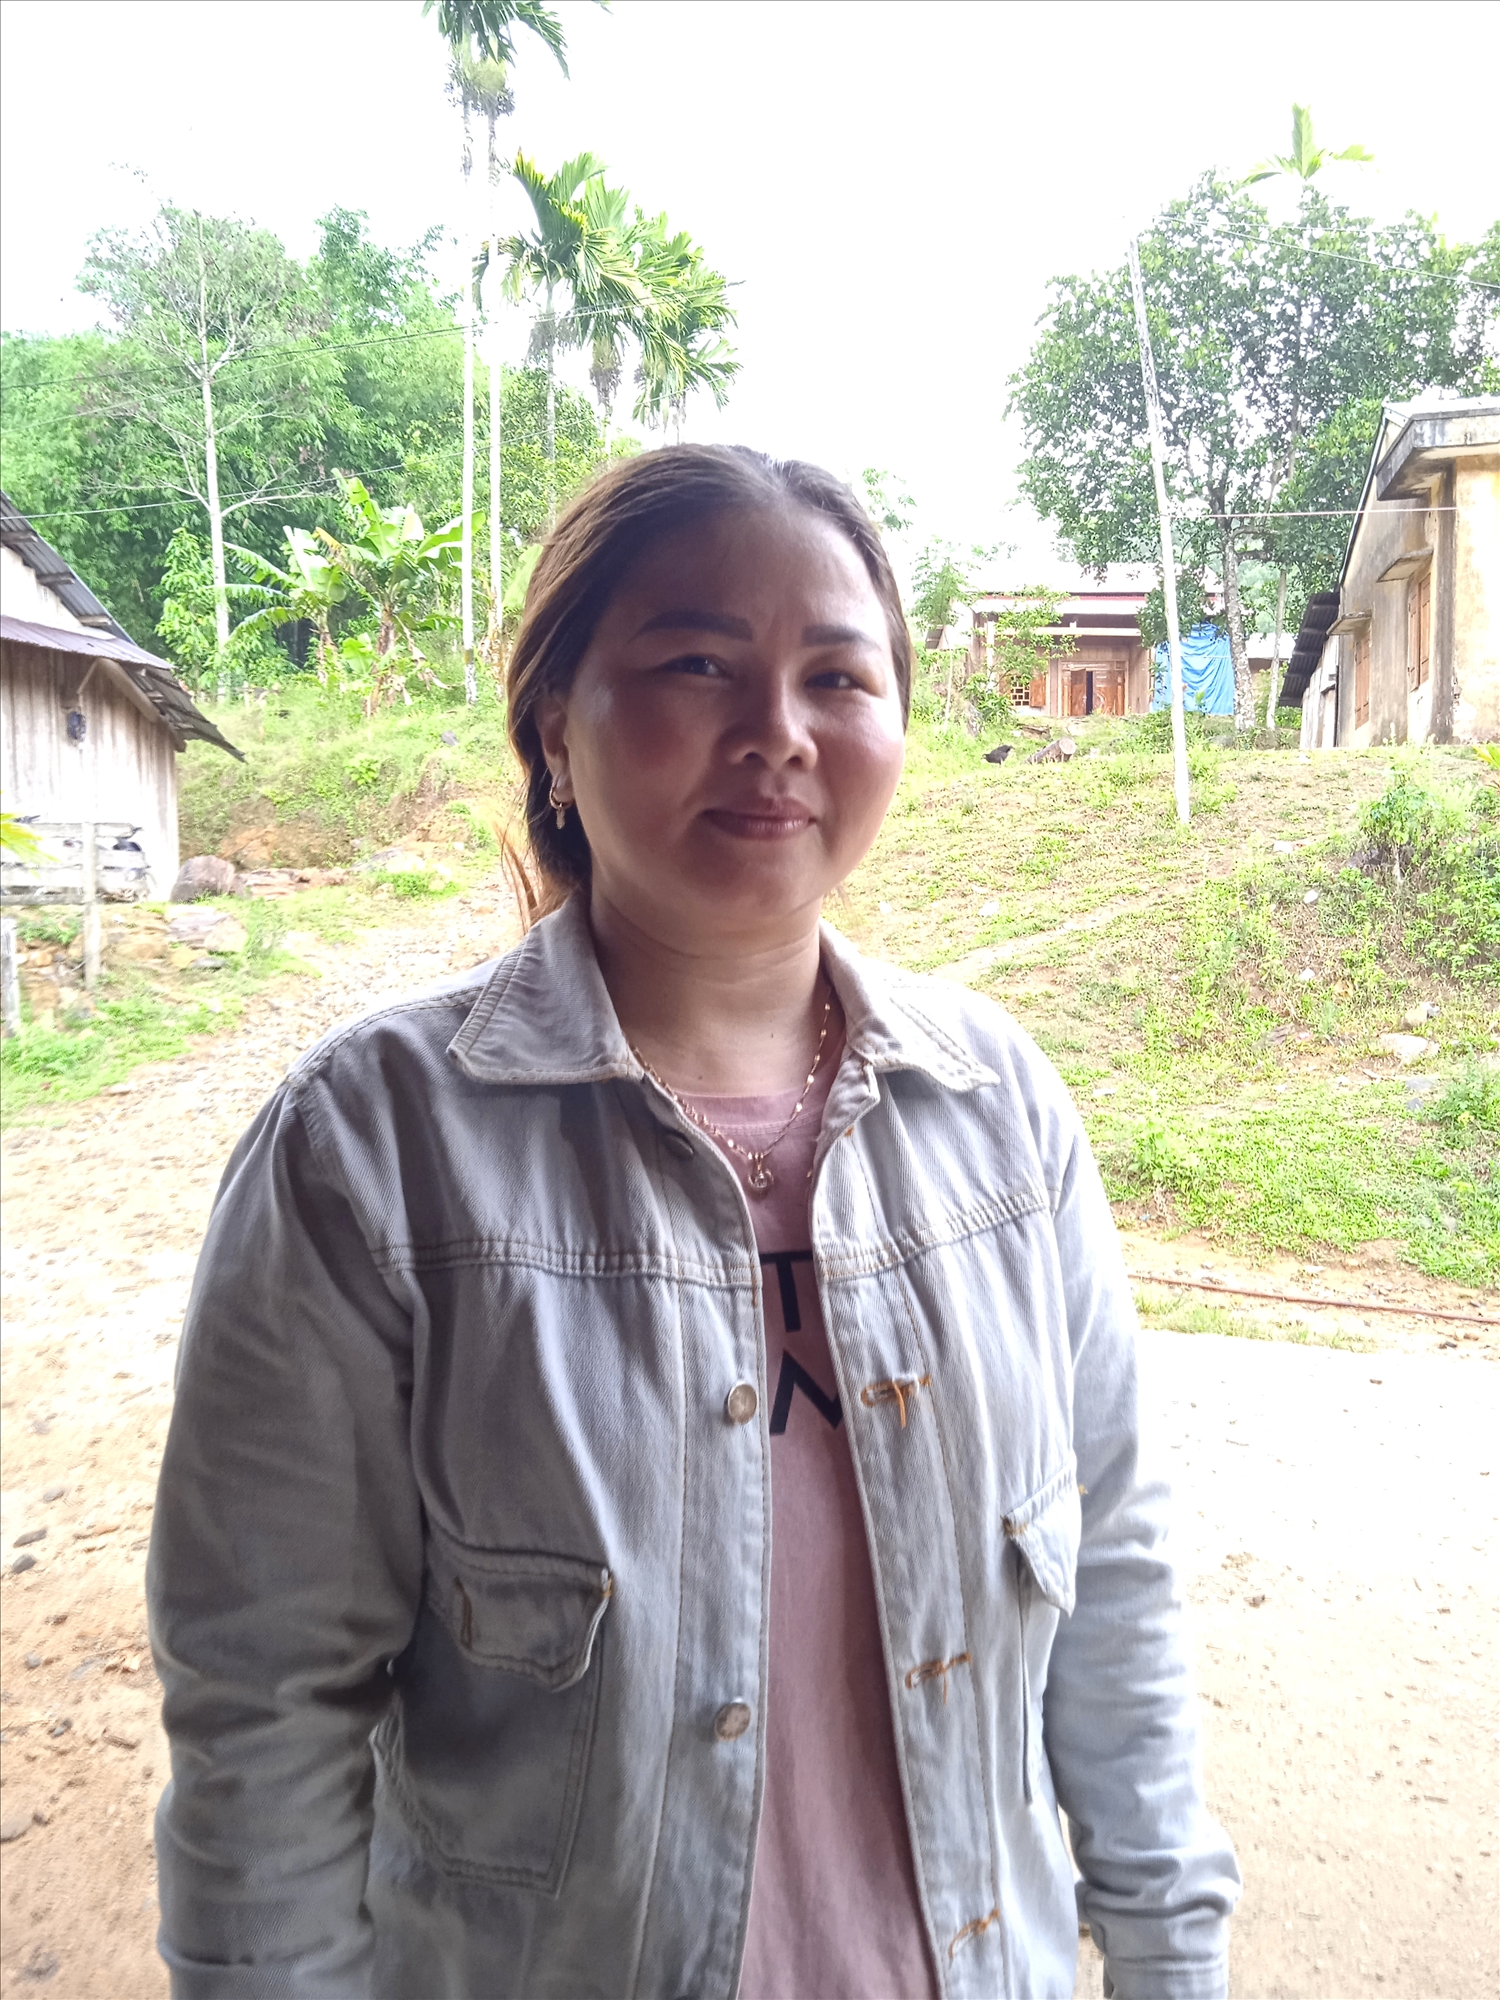 Với tinh thần trách nhiệm trong công việc, tận tụy giúp đỡ người dân, chị Nguyễn Thị Hà - Bí thư chi bộ thôn 5 được cấp trên tin tưởng, Nhân dân yêu mến.